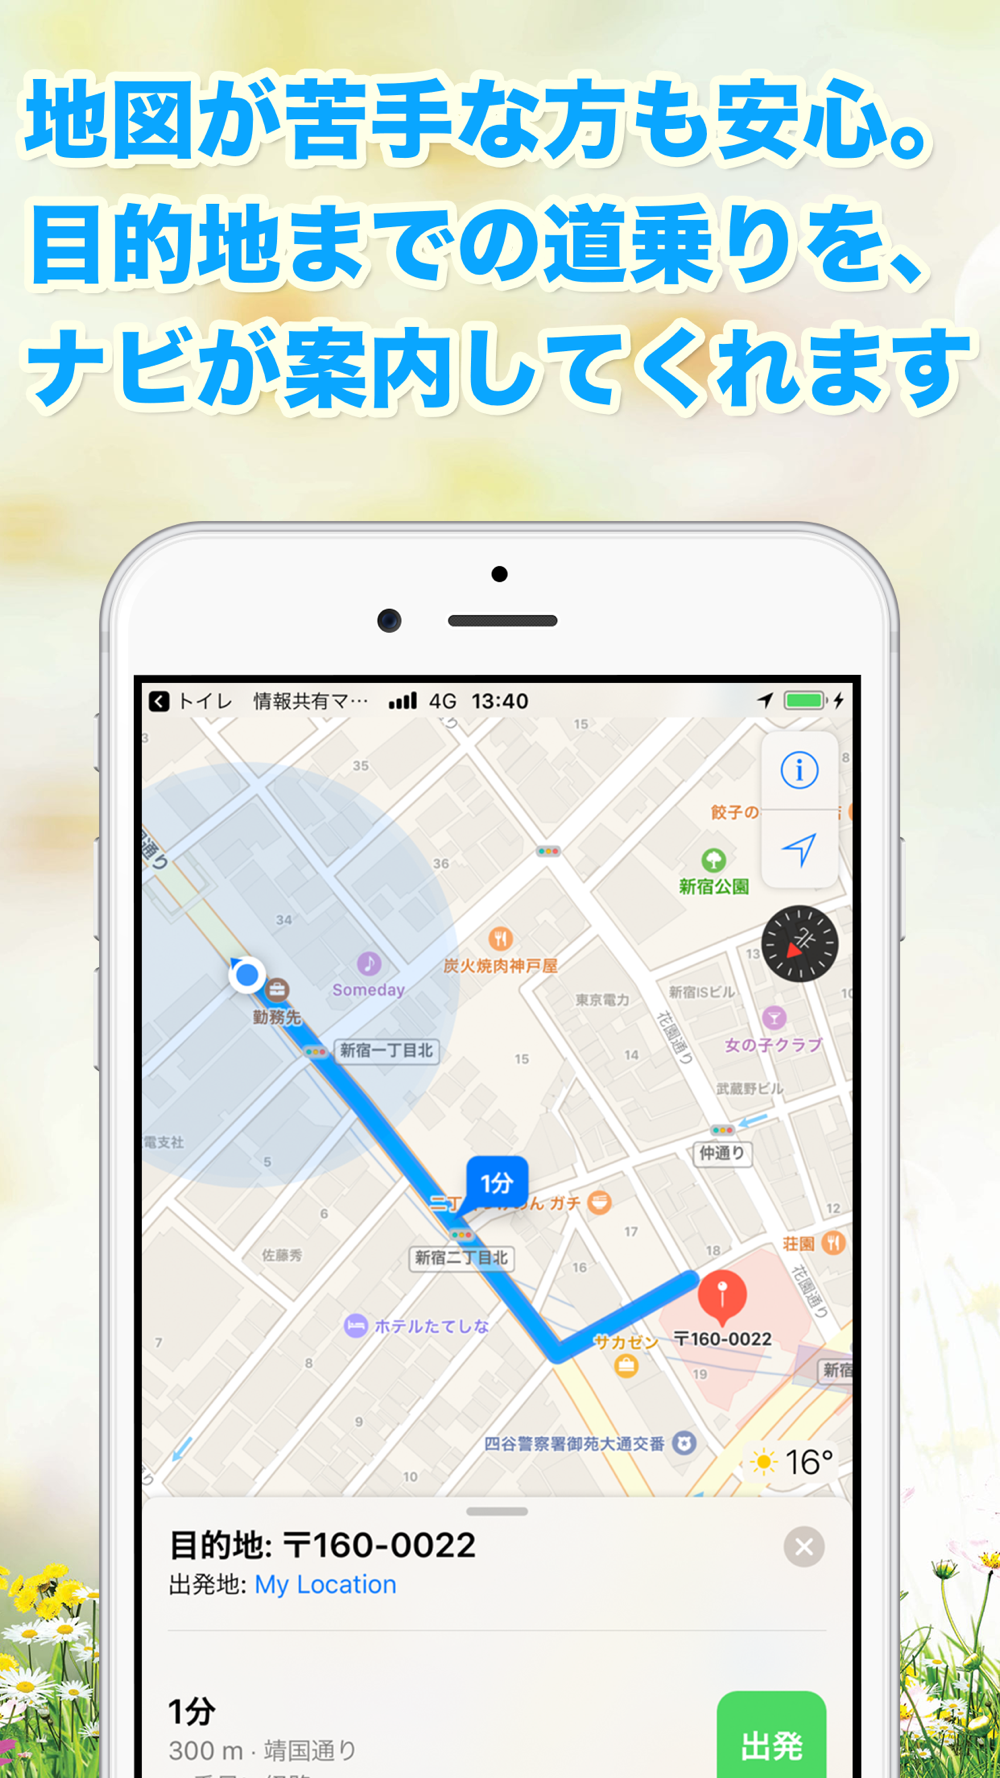 トイレ情報共有マップくん Free Download App For Iphone Steprimo Com